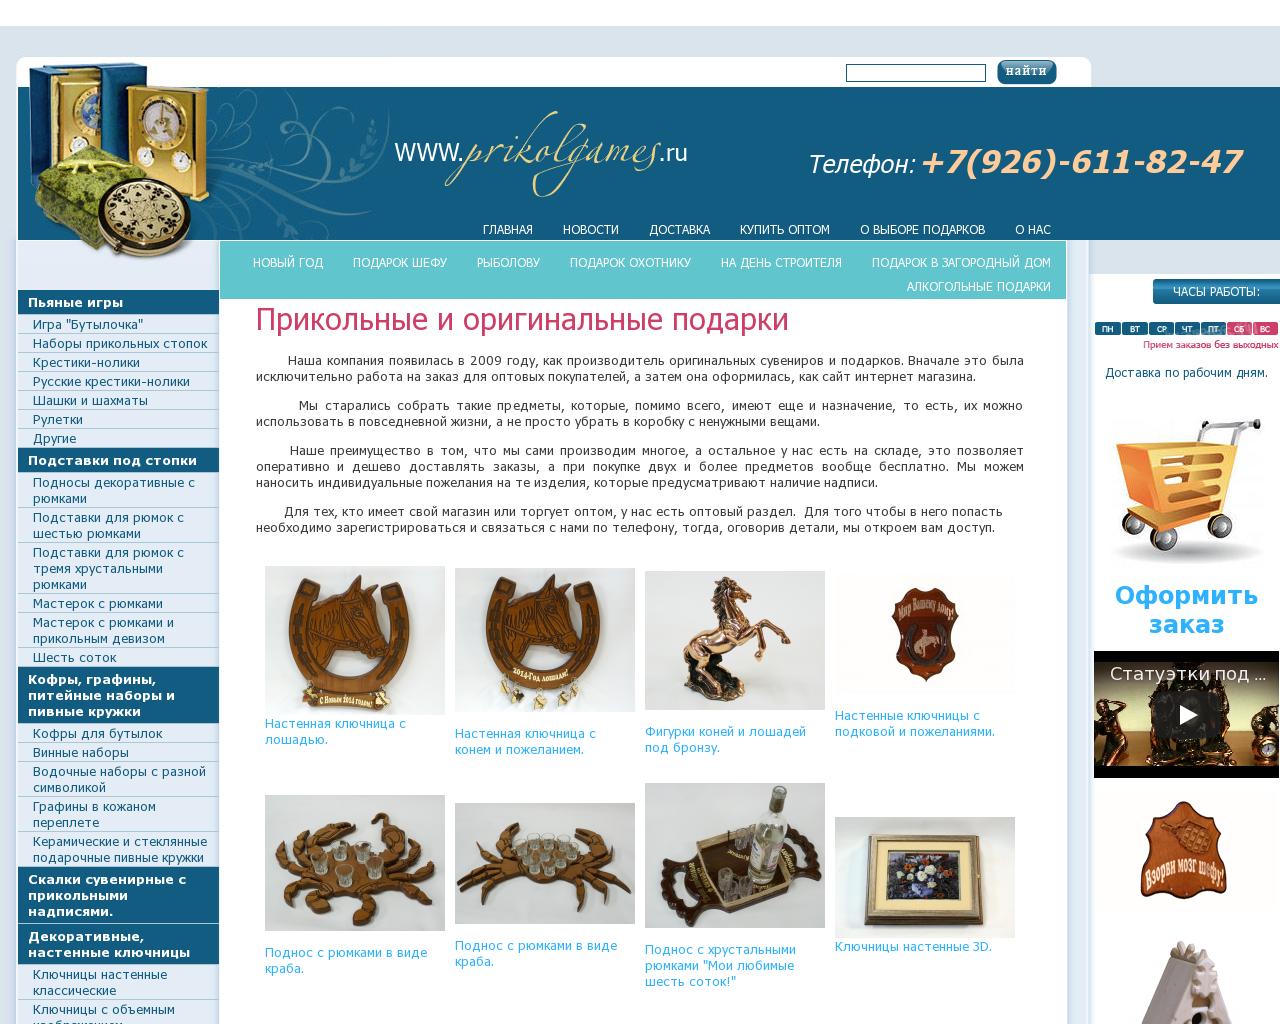 Изображение сайта prikolgames.ru в разрешении 1280x1024